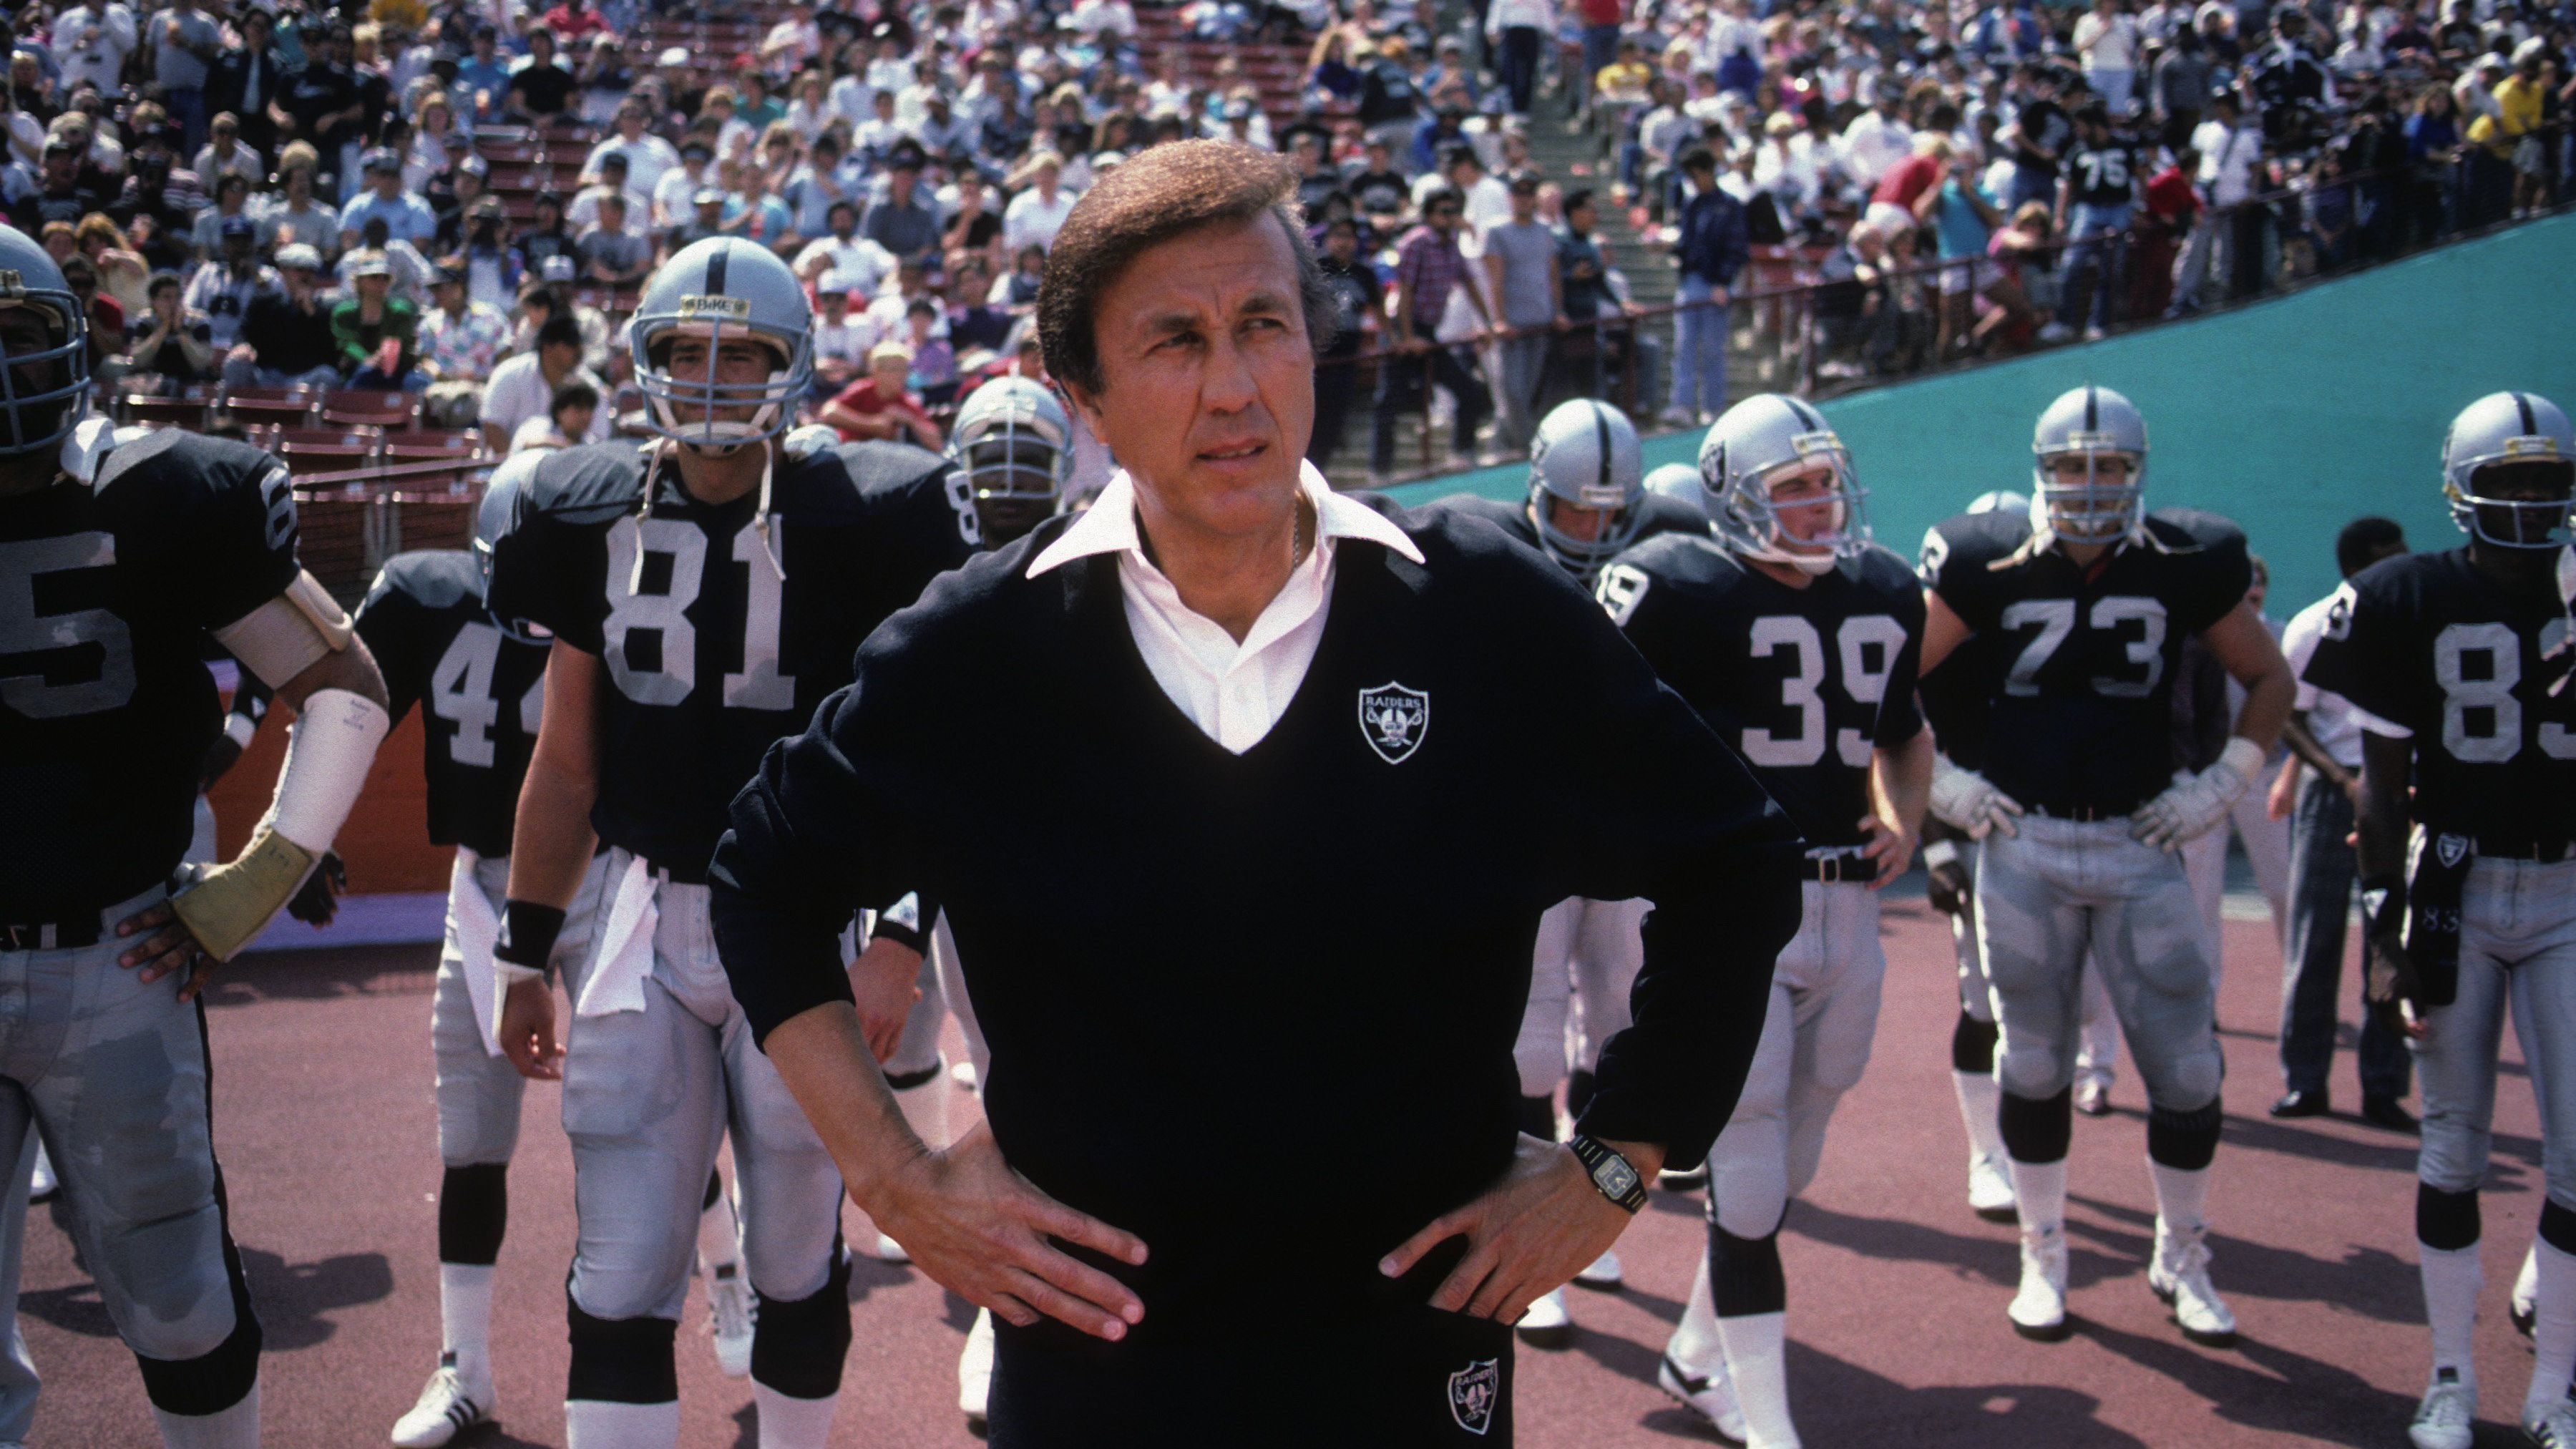 <strong>Tom Flores</strong><br>Er war neun Jahre lang Raiders-Coach und gewann zwei Super Bowls. 1988 wurde er nach einem 5-10-Record entlassen. Es war erst seine zweite Losing Season. Seit Flores gewann die Franchise nie wieder den Super Bowl. Sowohl unter Jon Gruden als auch unter Josh McDaniels schlossen die Raiders nicht wieder zu den Contendern auf und liefen den eigenen Ansprüchen hinterher.